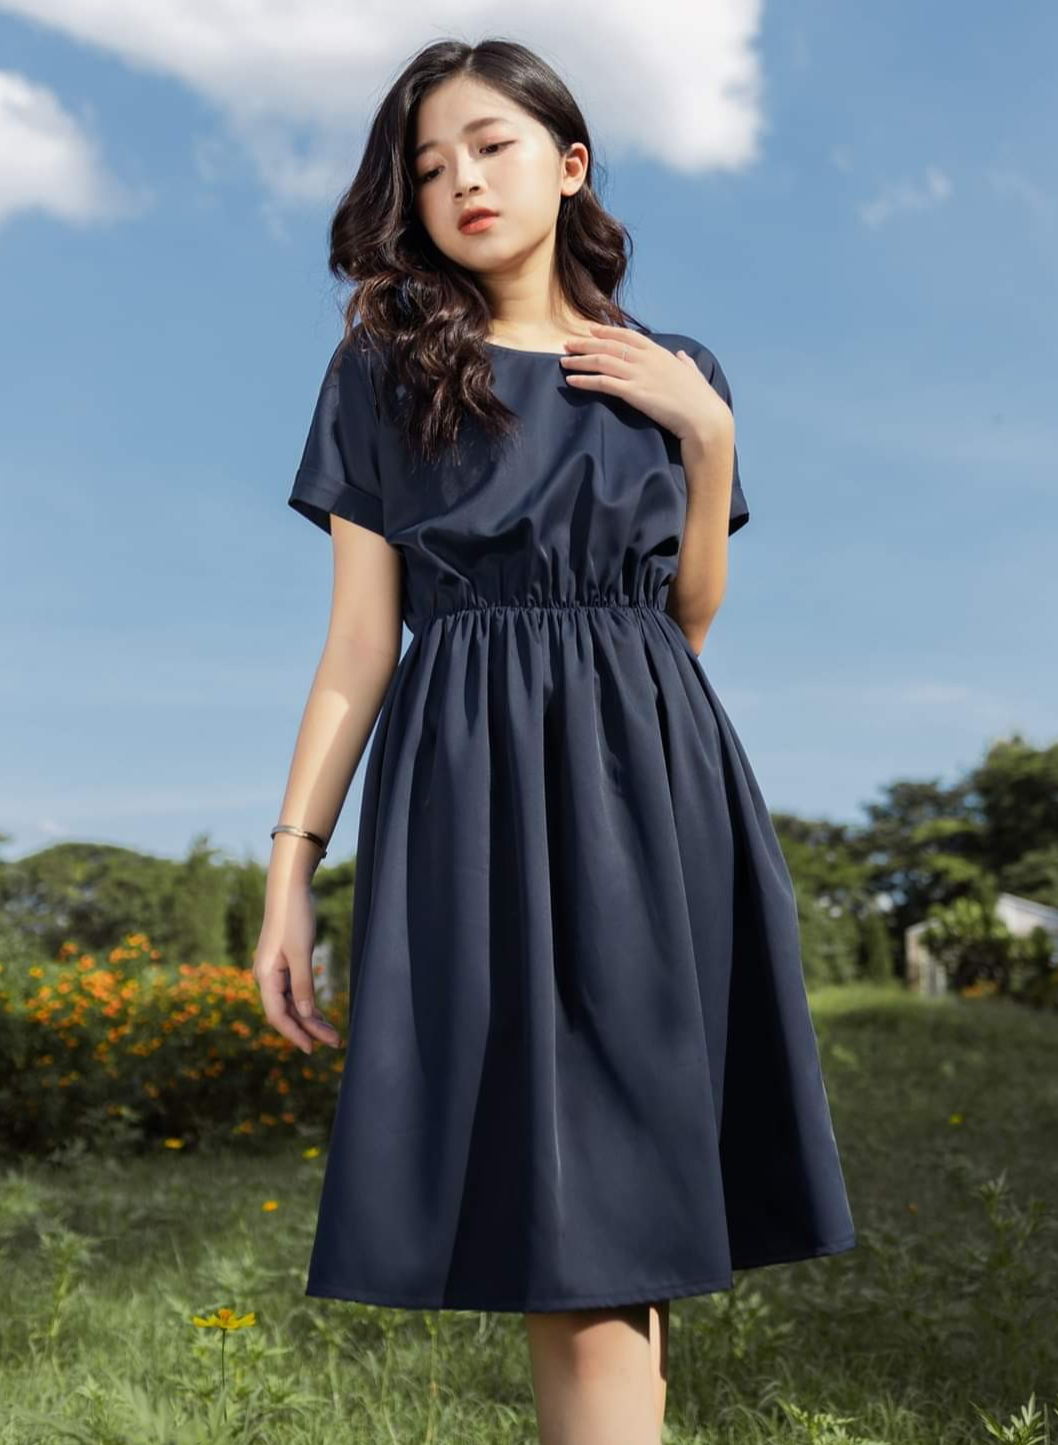 8 thiết kế váy xòe bán chạy nhất Yando - VnExpress Giải trí